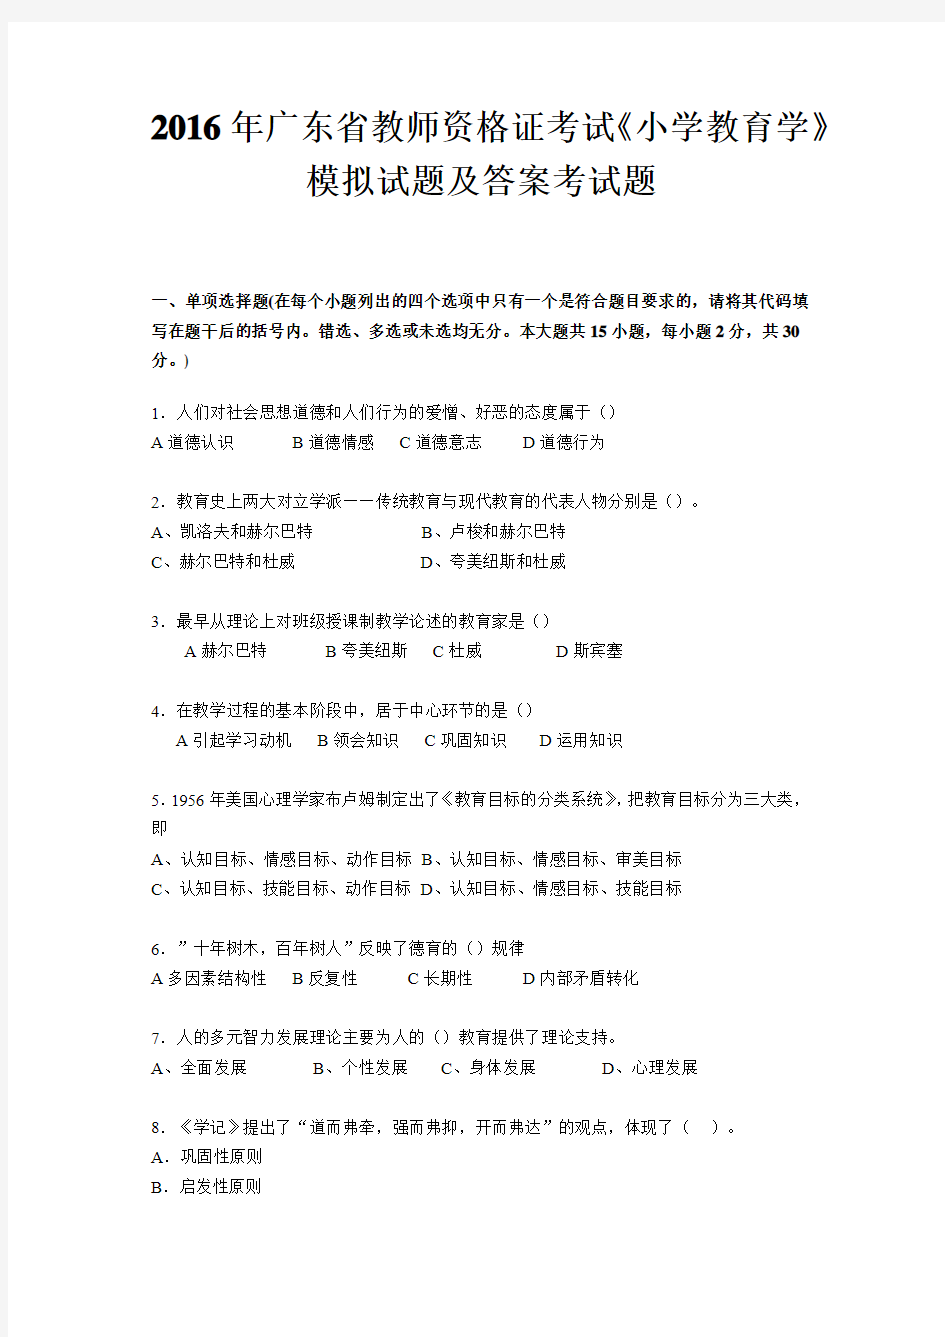 2016年广东省教师资格证考试《小学教育学》模拟试题及答案考试题